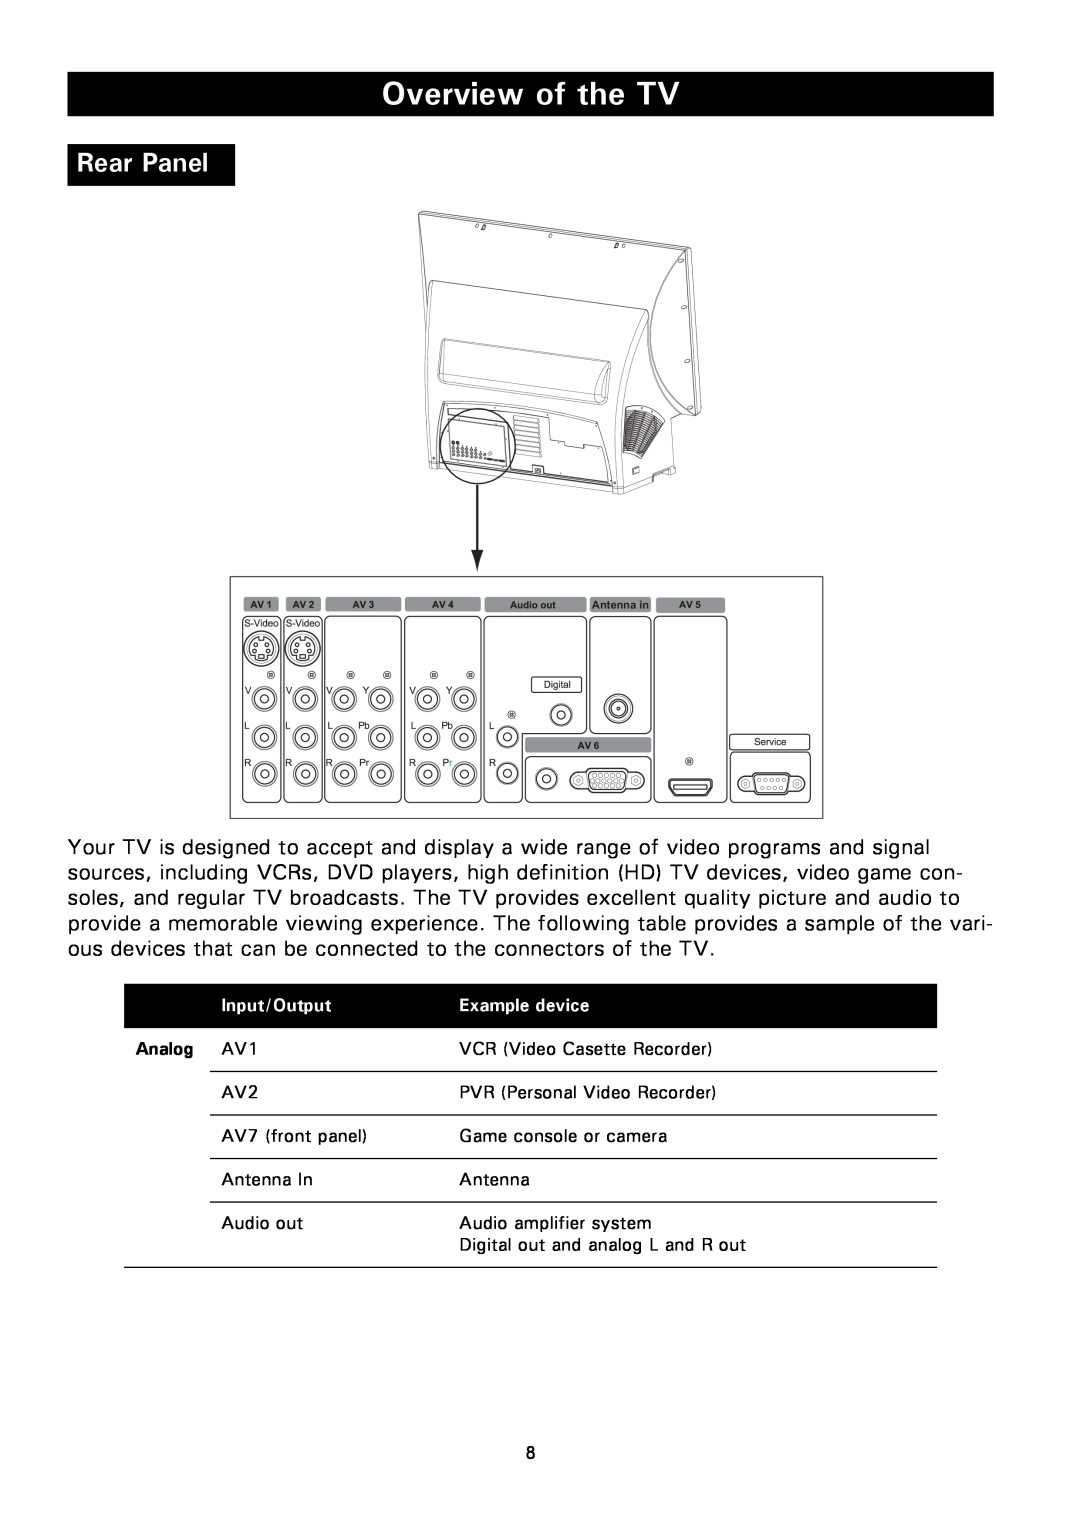 Magnavox 50ML8105D/17 owner manual Rear Panel, Overview of the TV, Analog AV1 